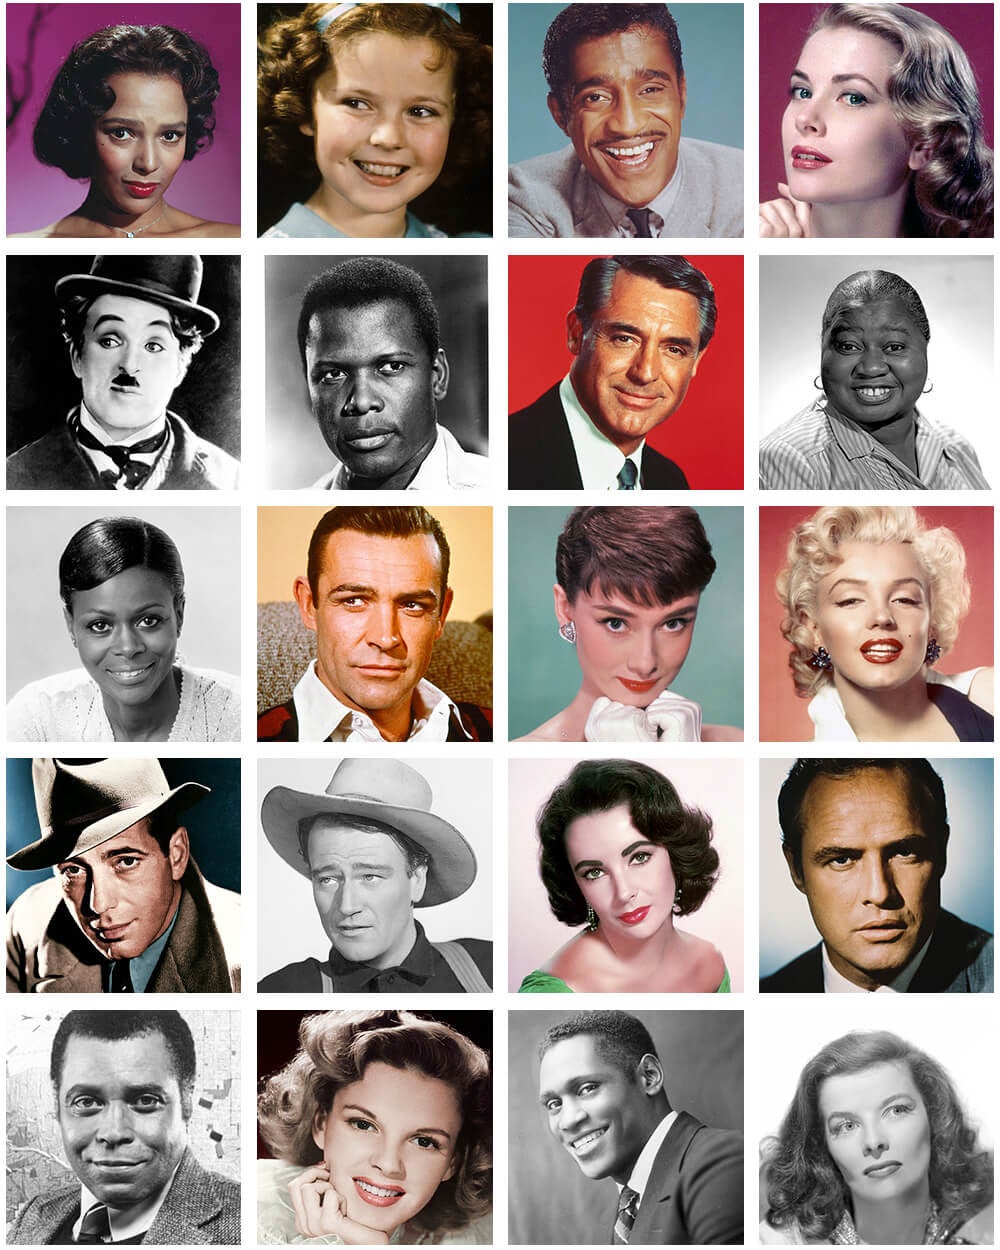 You Recognize Famous Classic Actors?